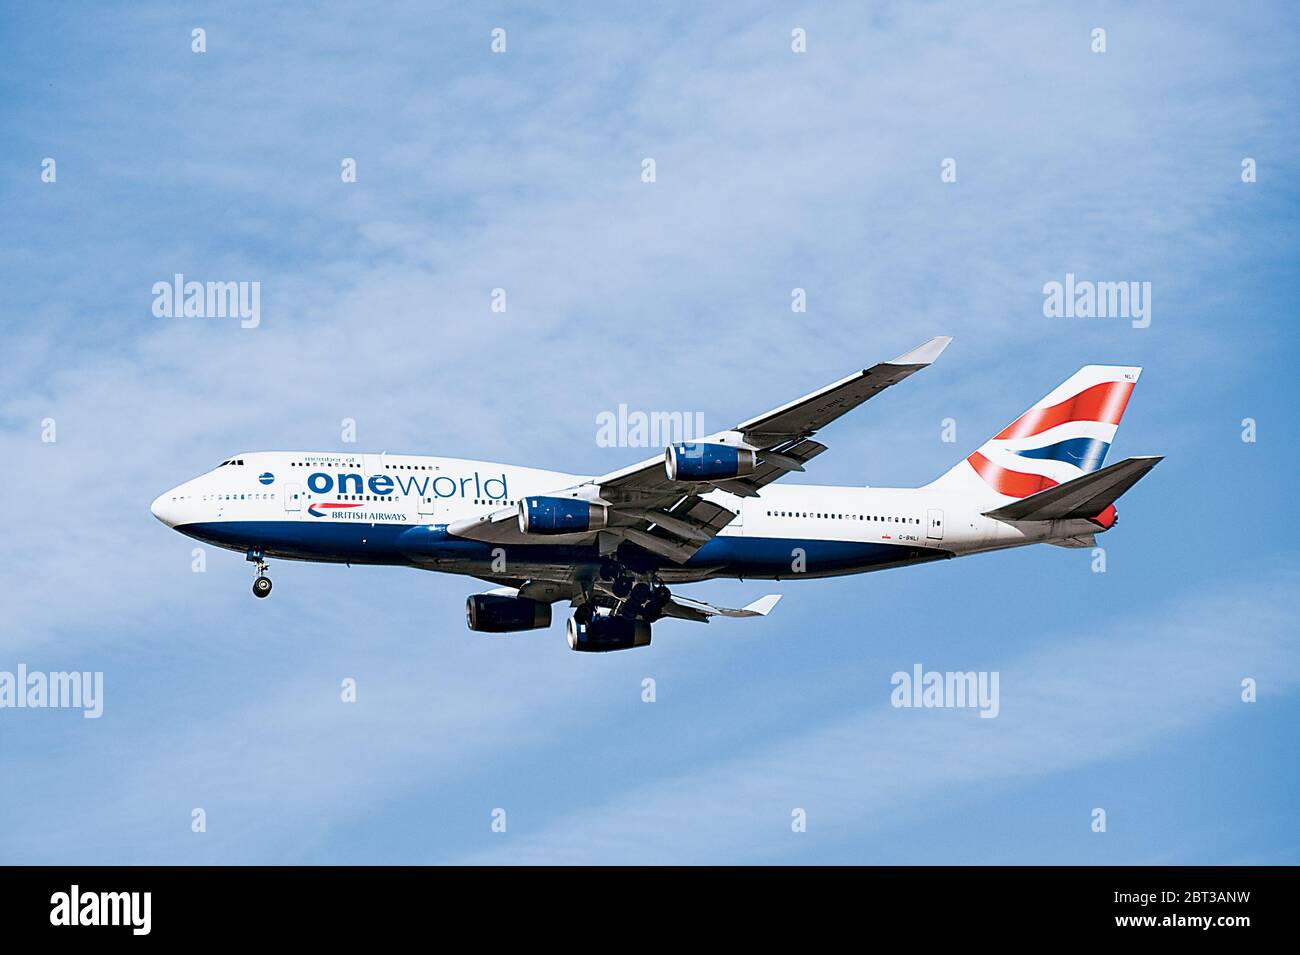 British Airways Jet Airplane Boeing 747-400 G-BNLI One World Stock Photo